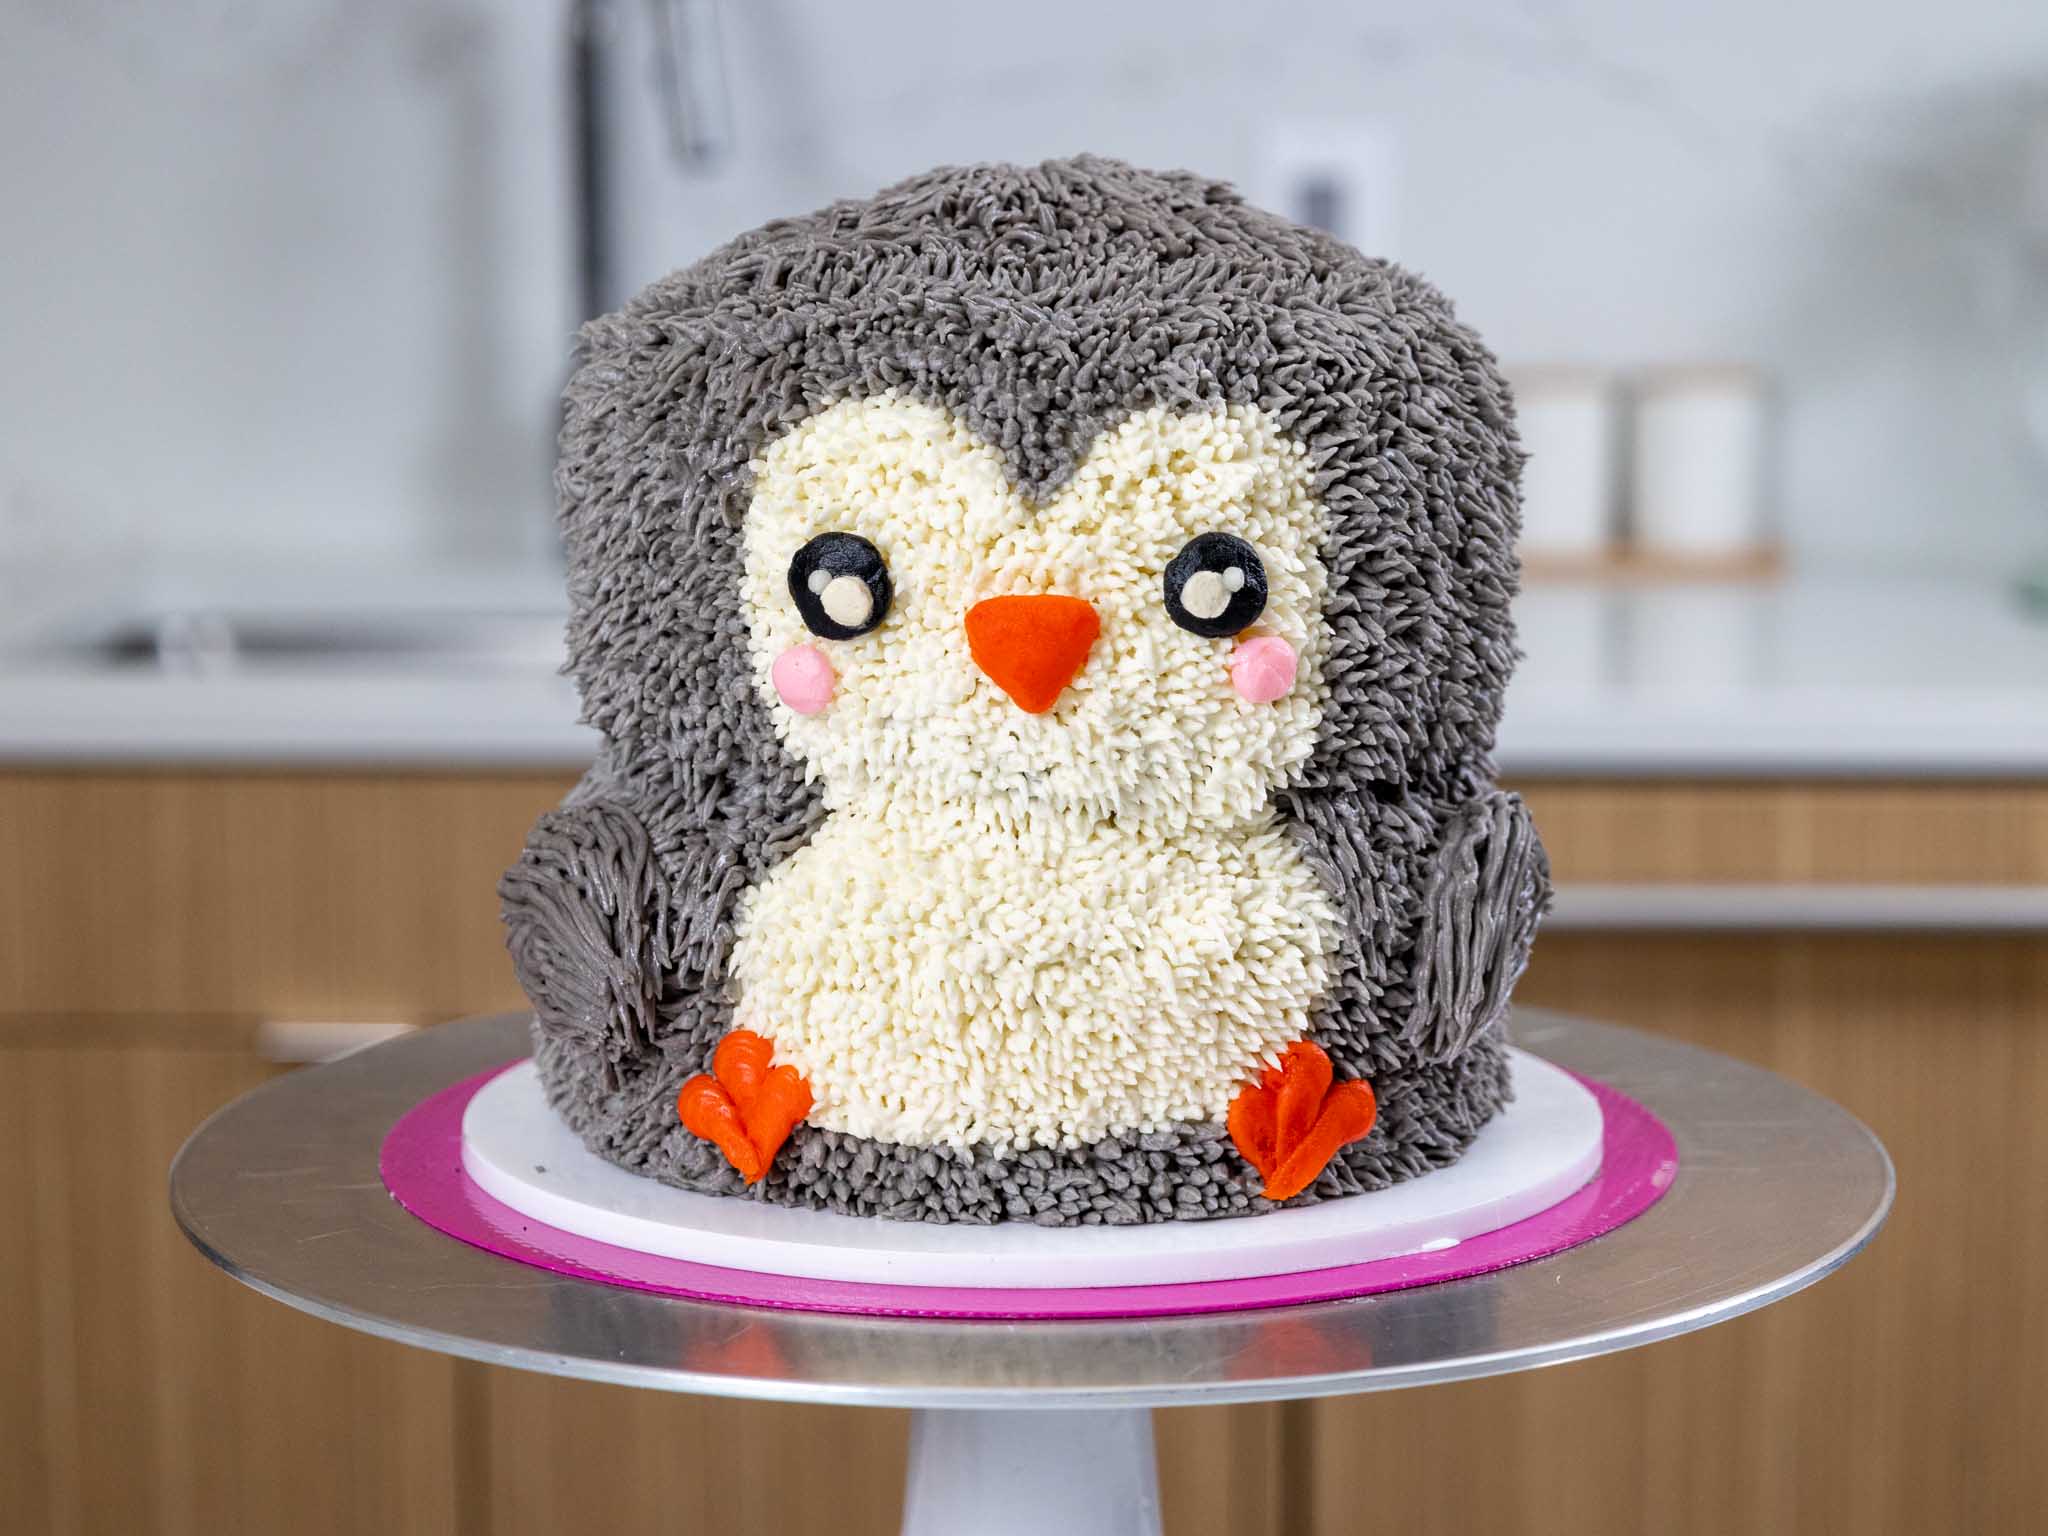 Penguin Cake | The Cake Blog